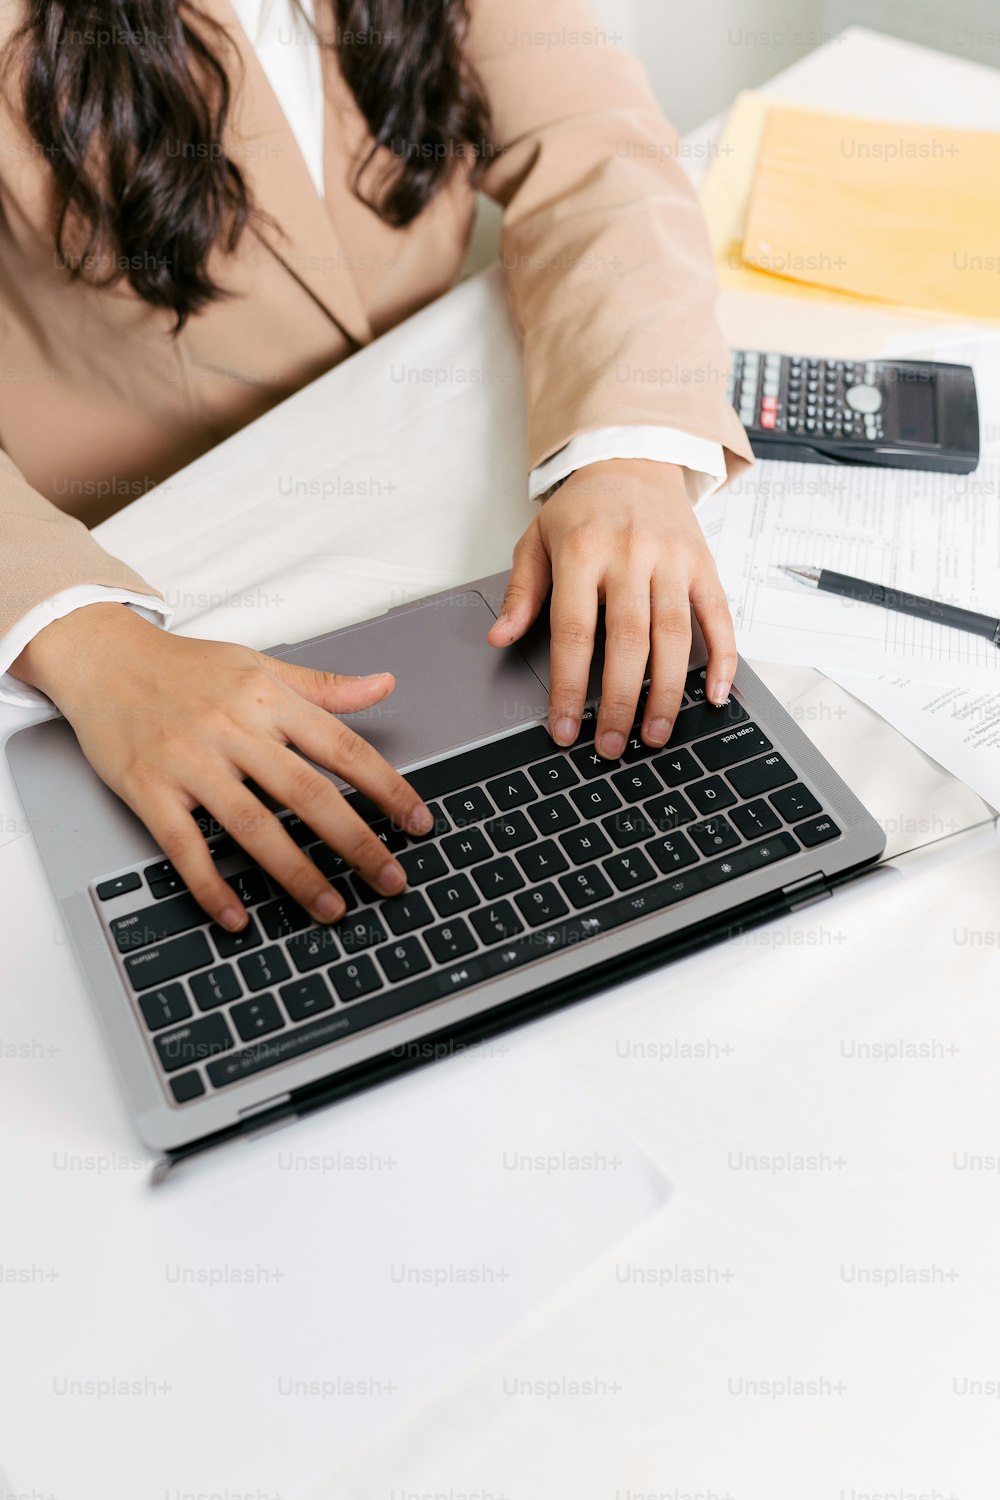 Una donna seduta a una scrivania che digita su un computer portatile